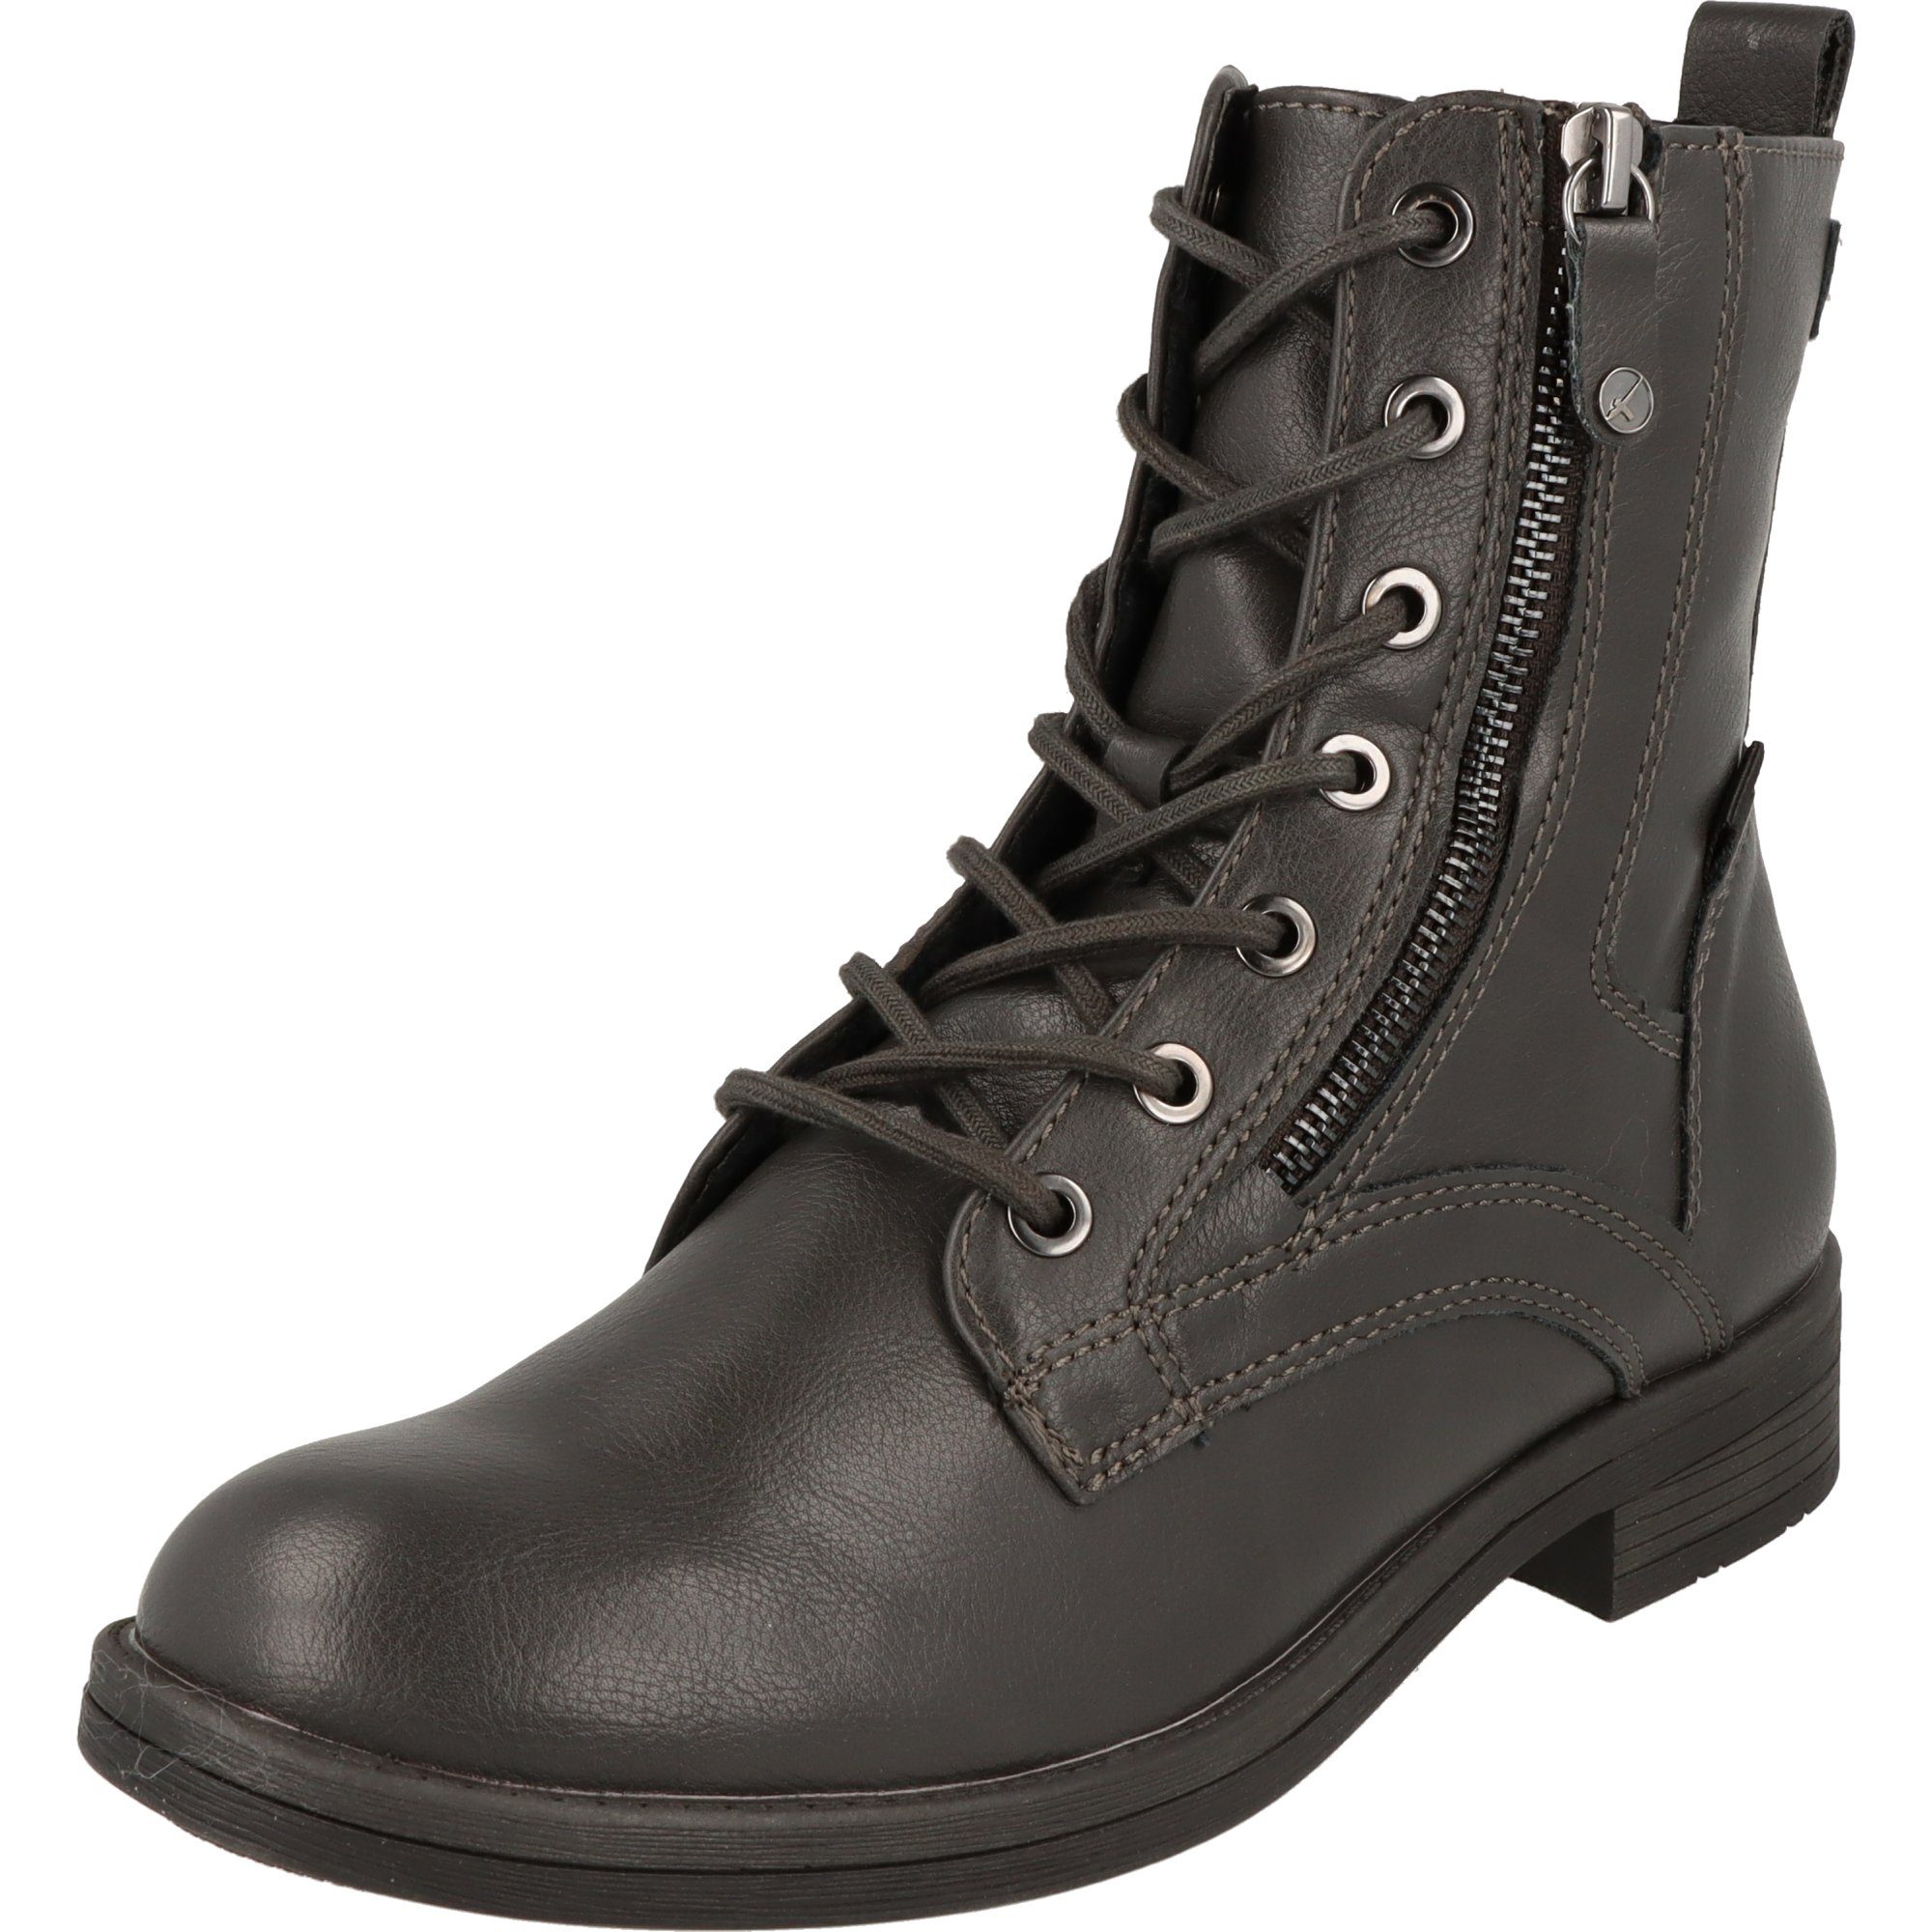 Tamaris Damen Schuhe Stiefelette Boots 11-25107-29 219 Dark Grey Stiefelette Dunkelgrau